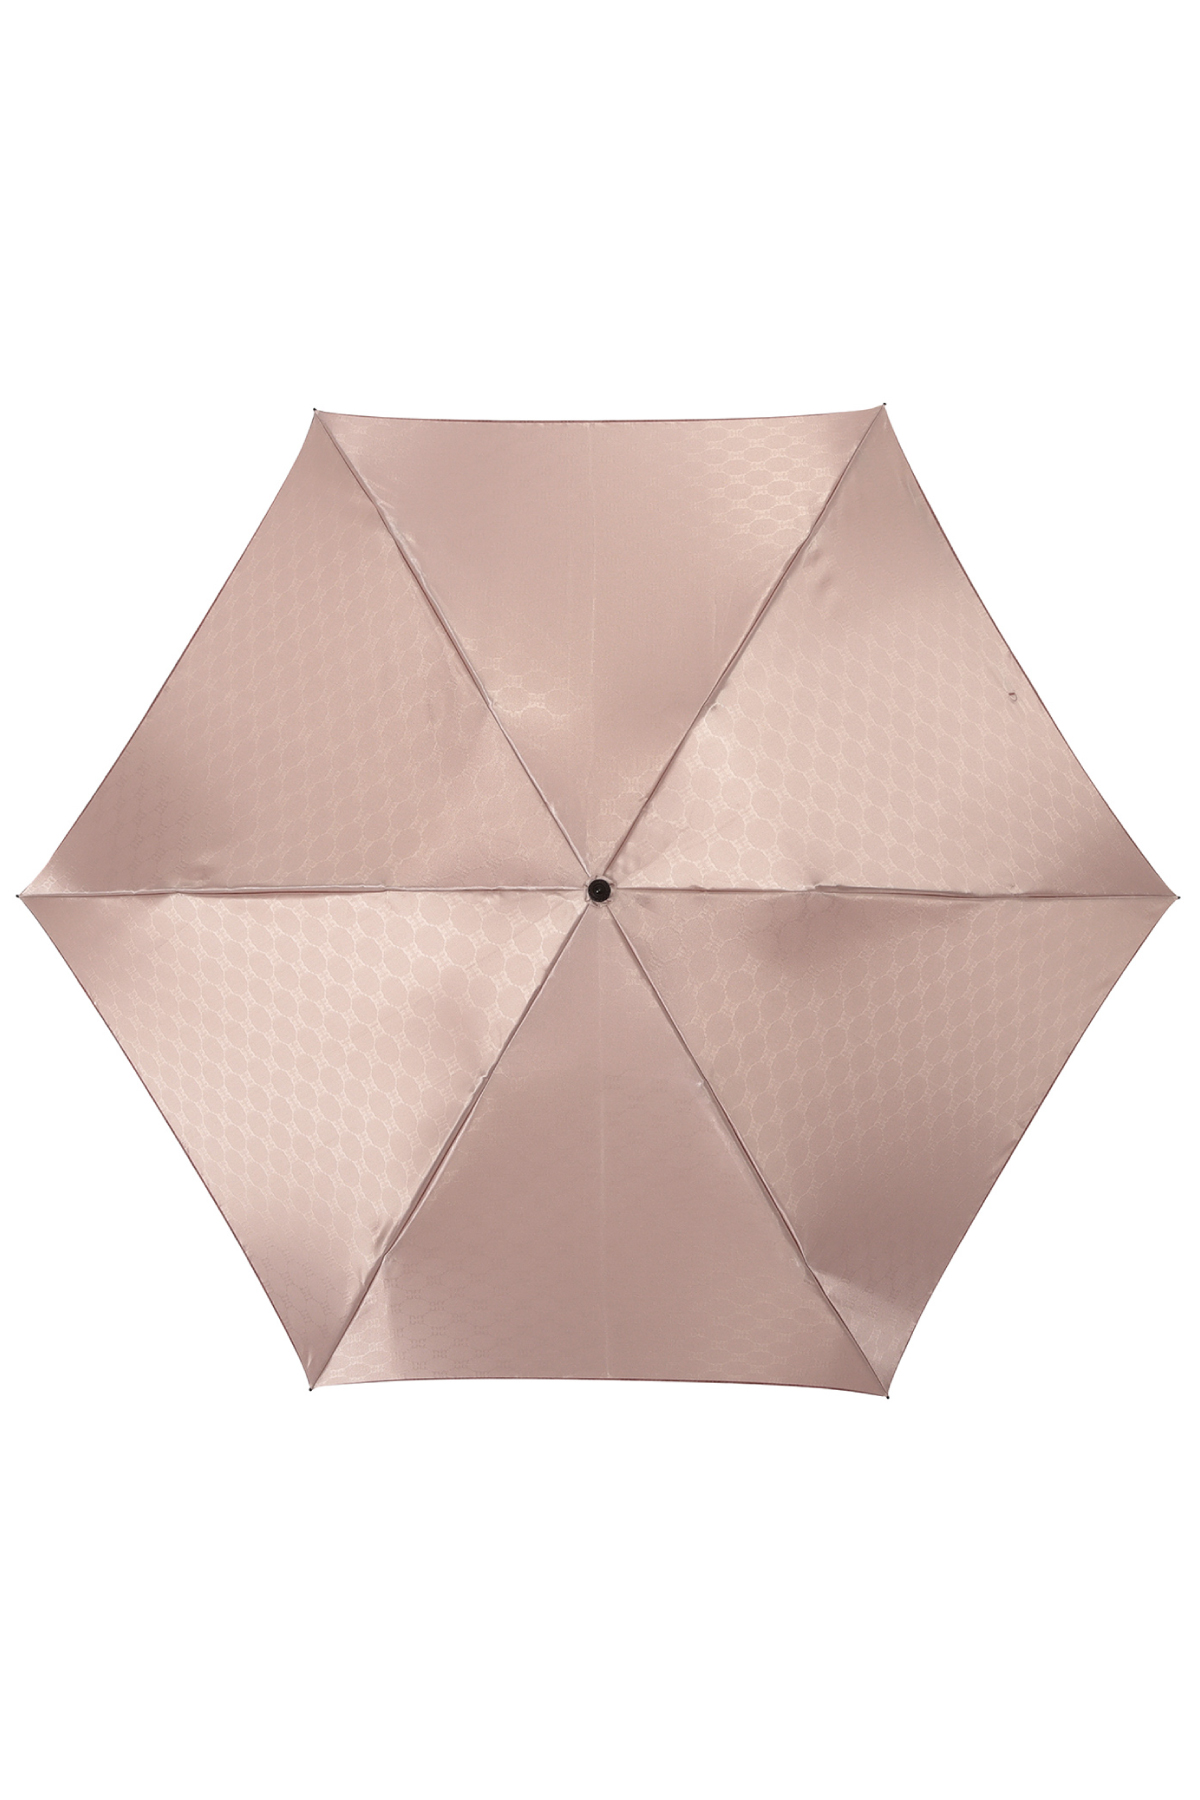 【雨傘】ミニ折りたたみ傘両面カチオン裏ロゴ 詳細画像 5